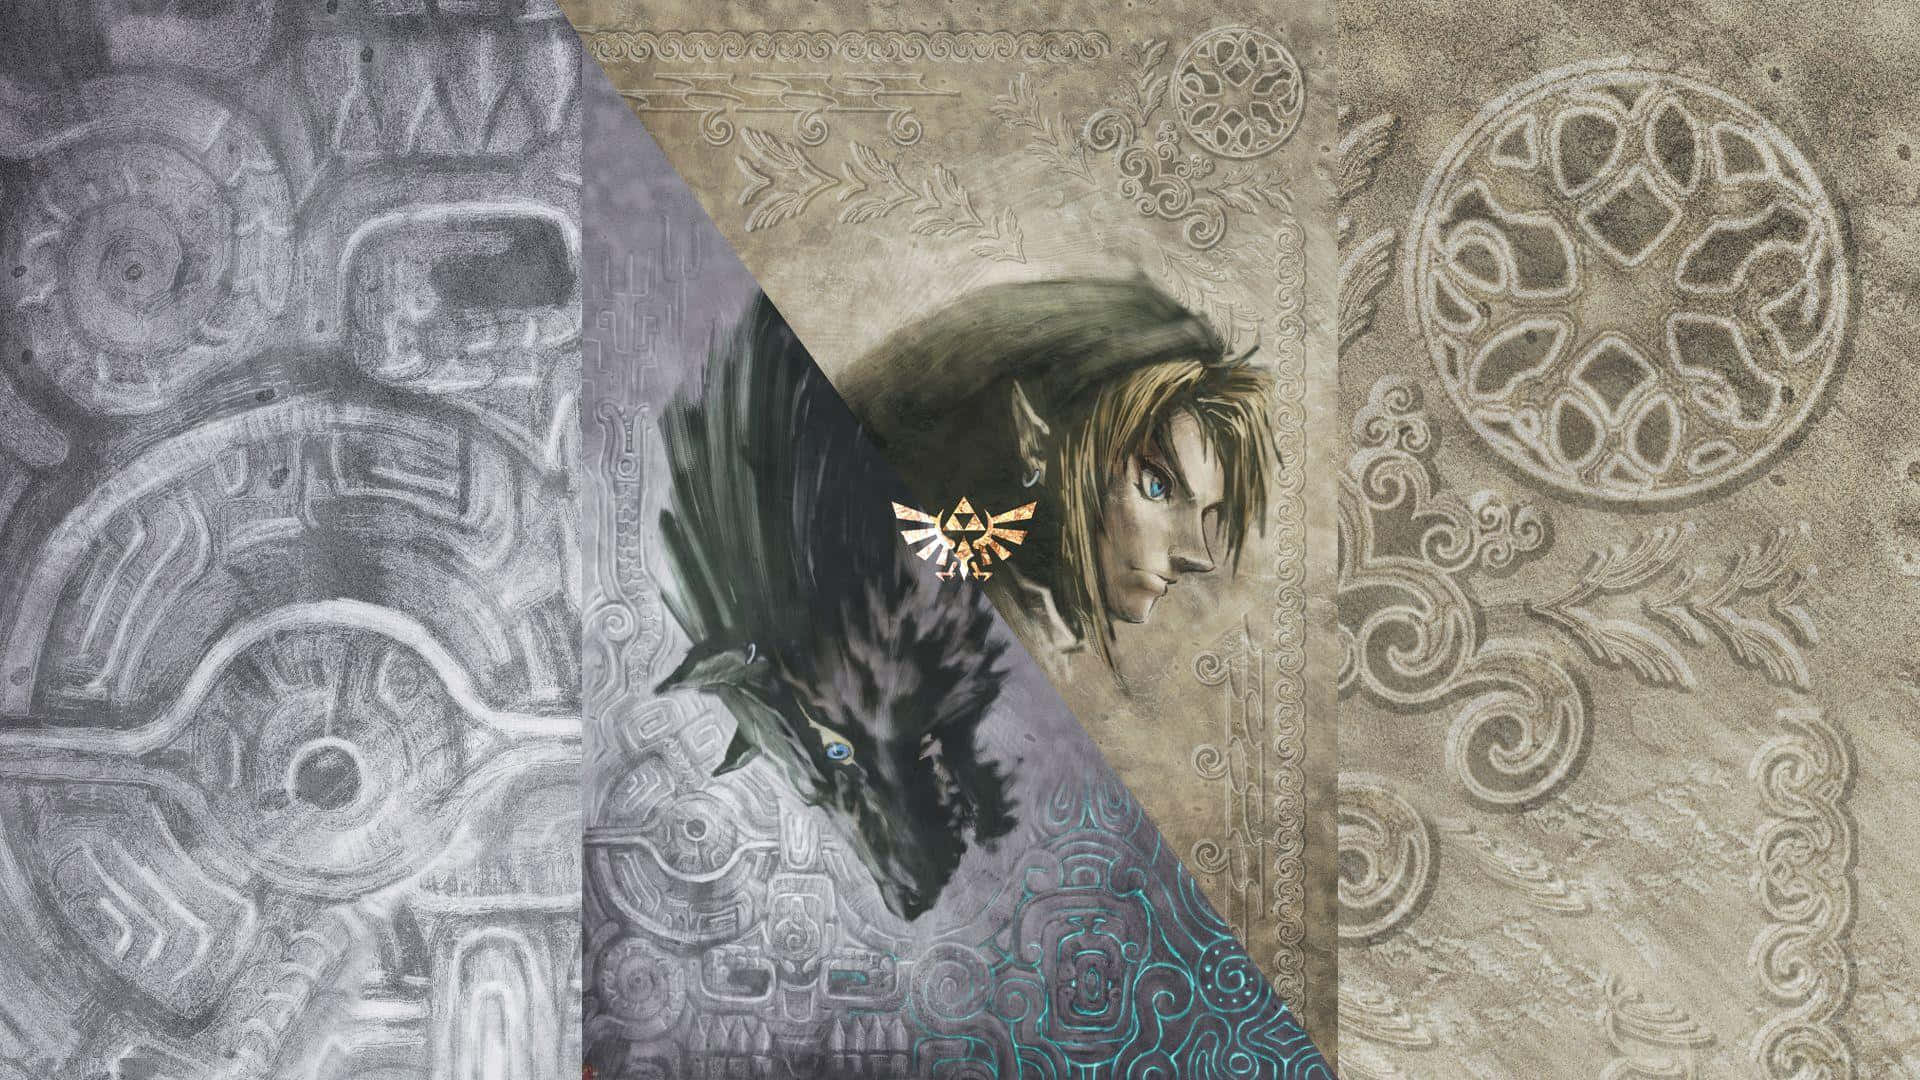 Linkeingestellt, Um Die Fantastische Welt Von Hyrule In The Legend Of Zelda: Twilight Princess Zu Erkunden. Wallpaper